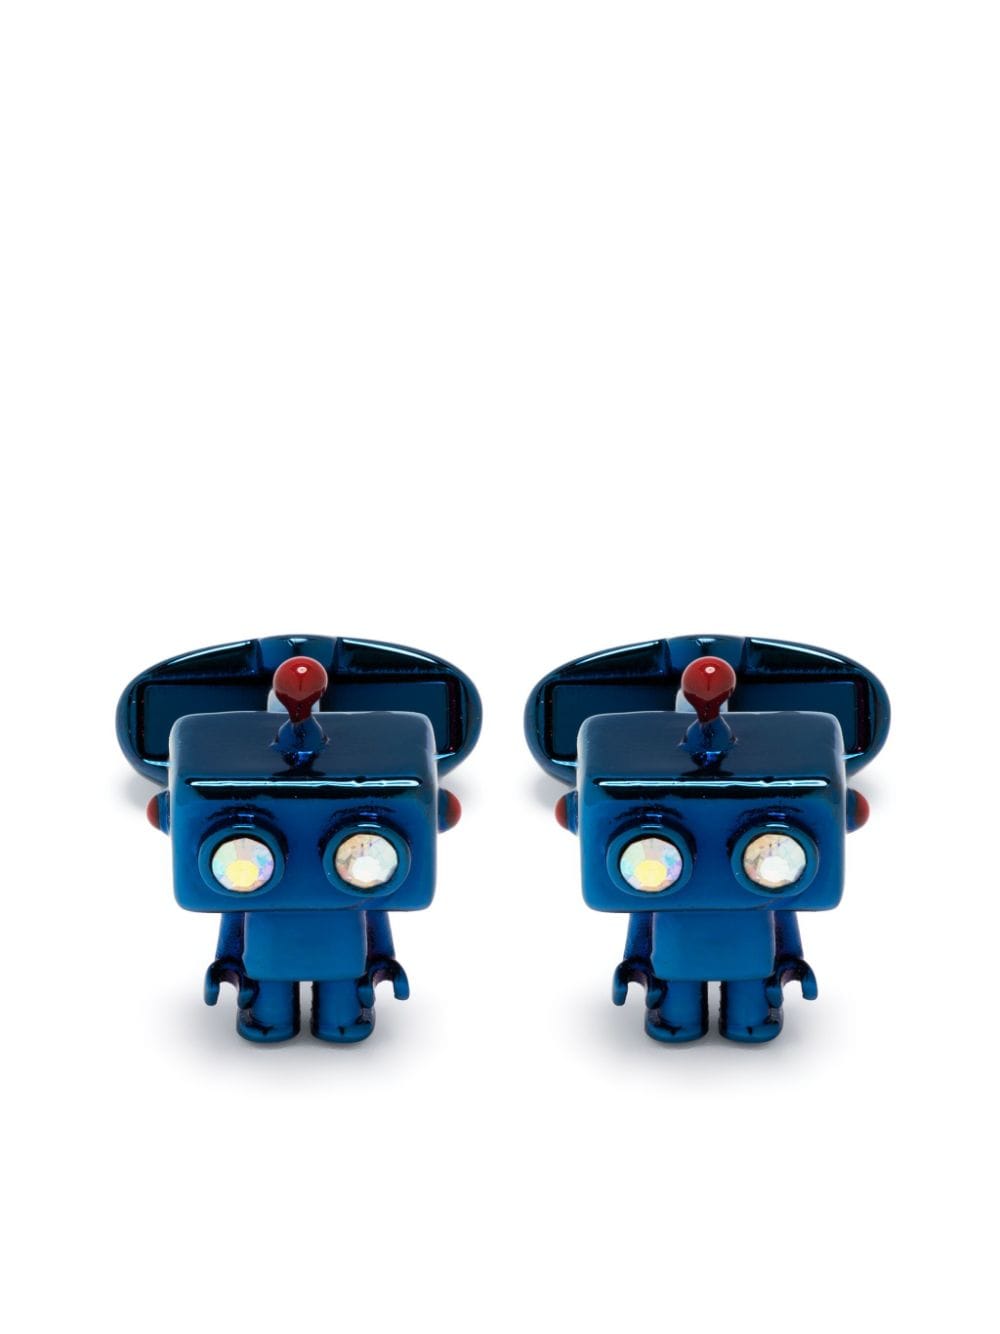 Paul Smith Robot metallic cufflinks - Blue von Paul Smith